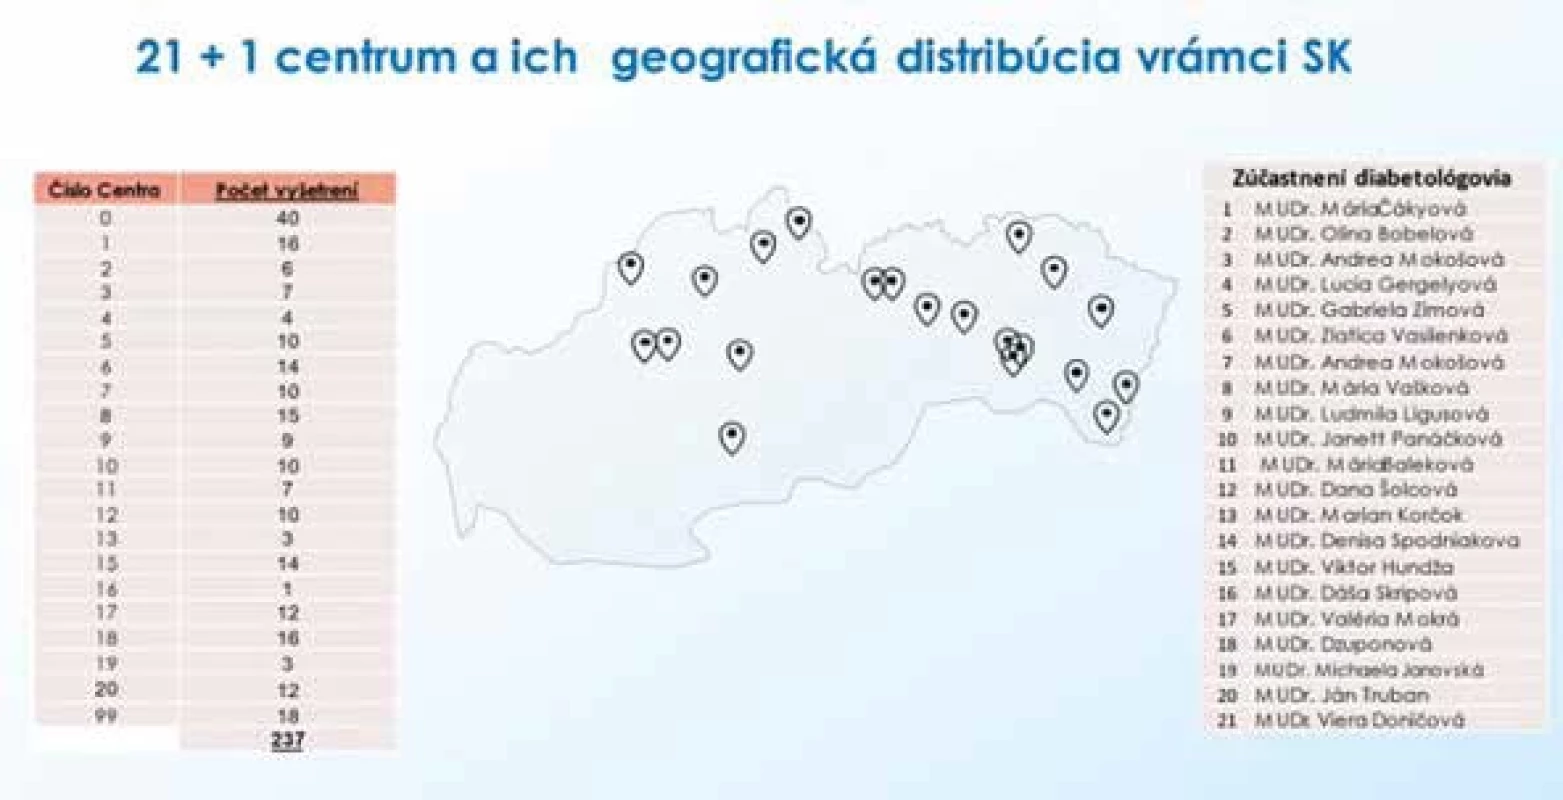 Prehľad zúčastnených centier (21 + 1 centrum) a ich geografická distribúcia v rámci Slovenska